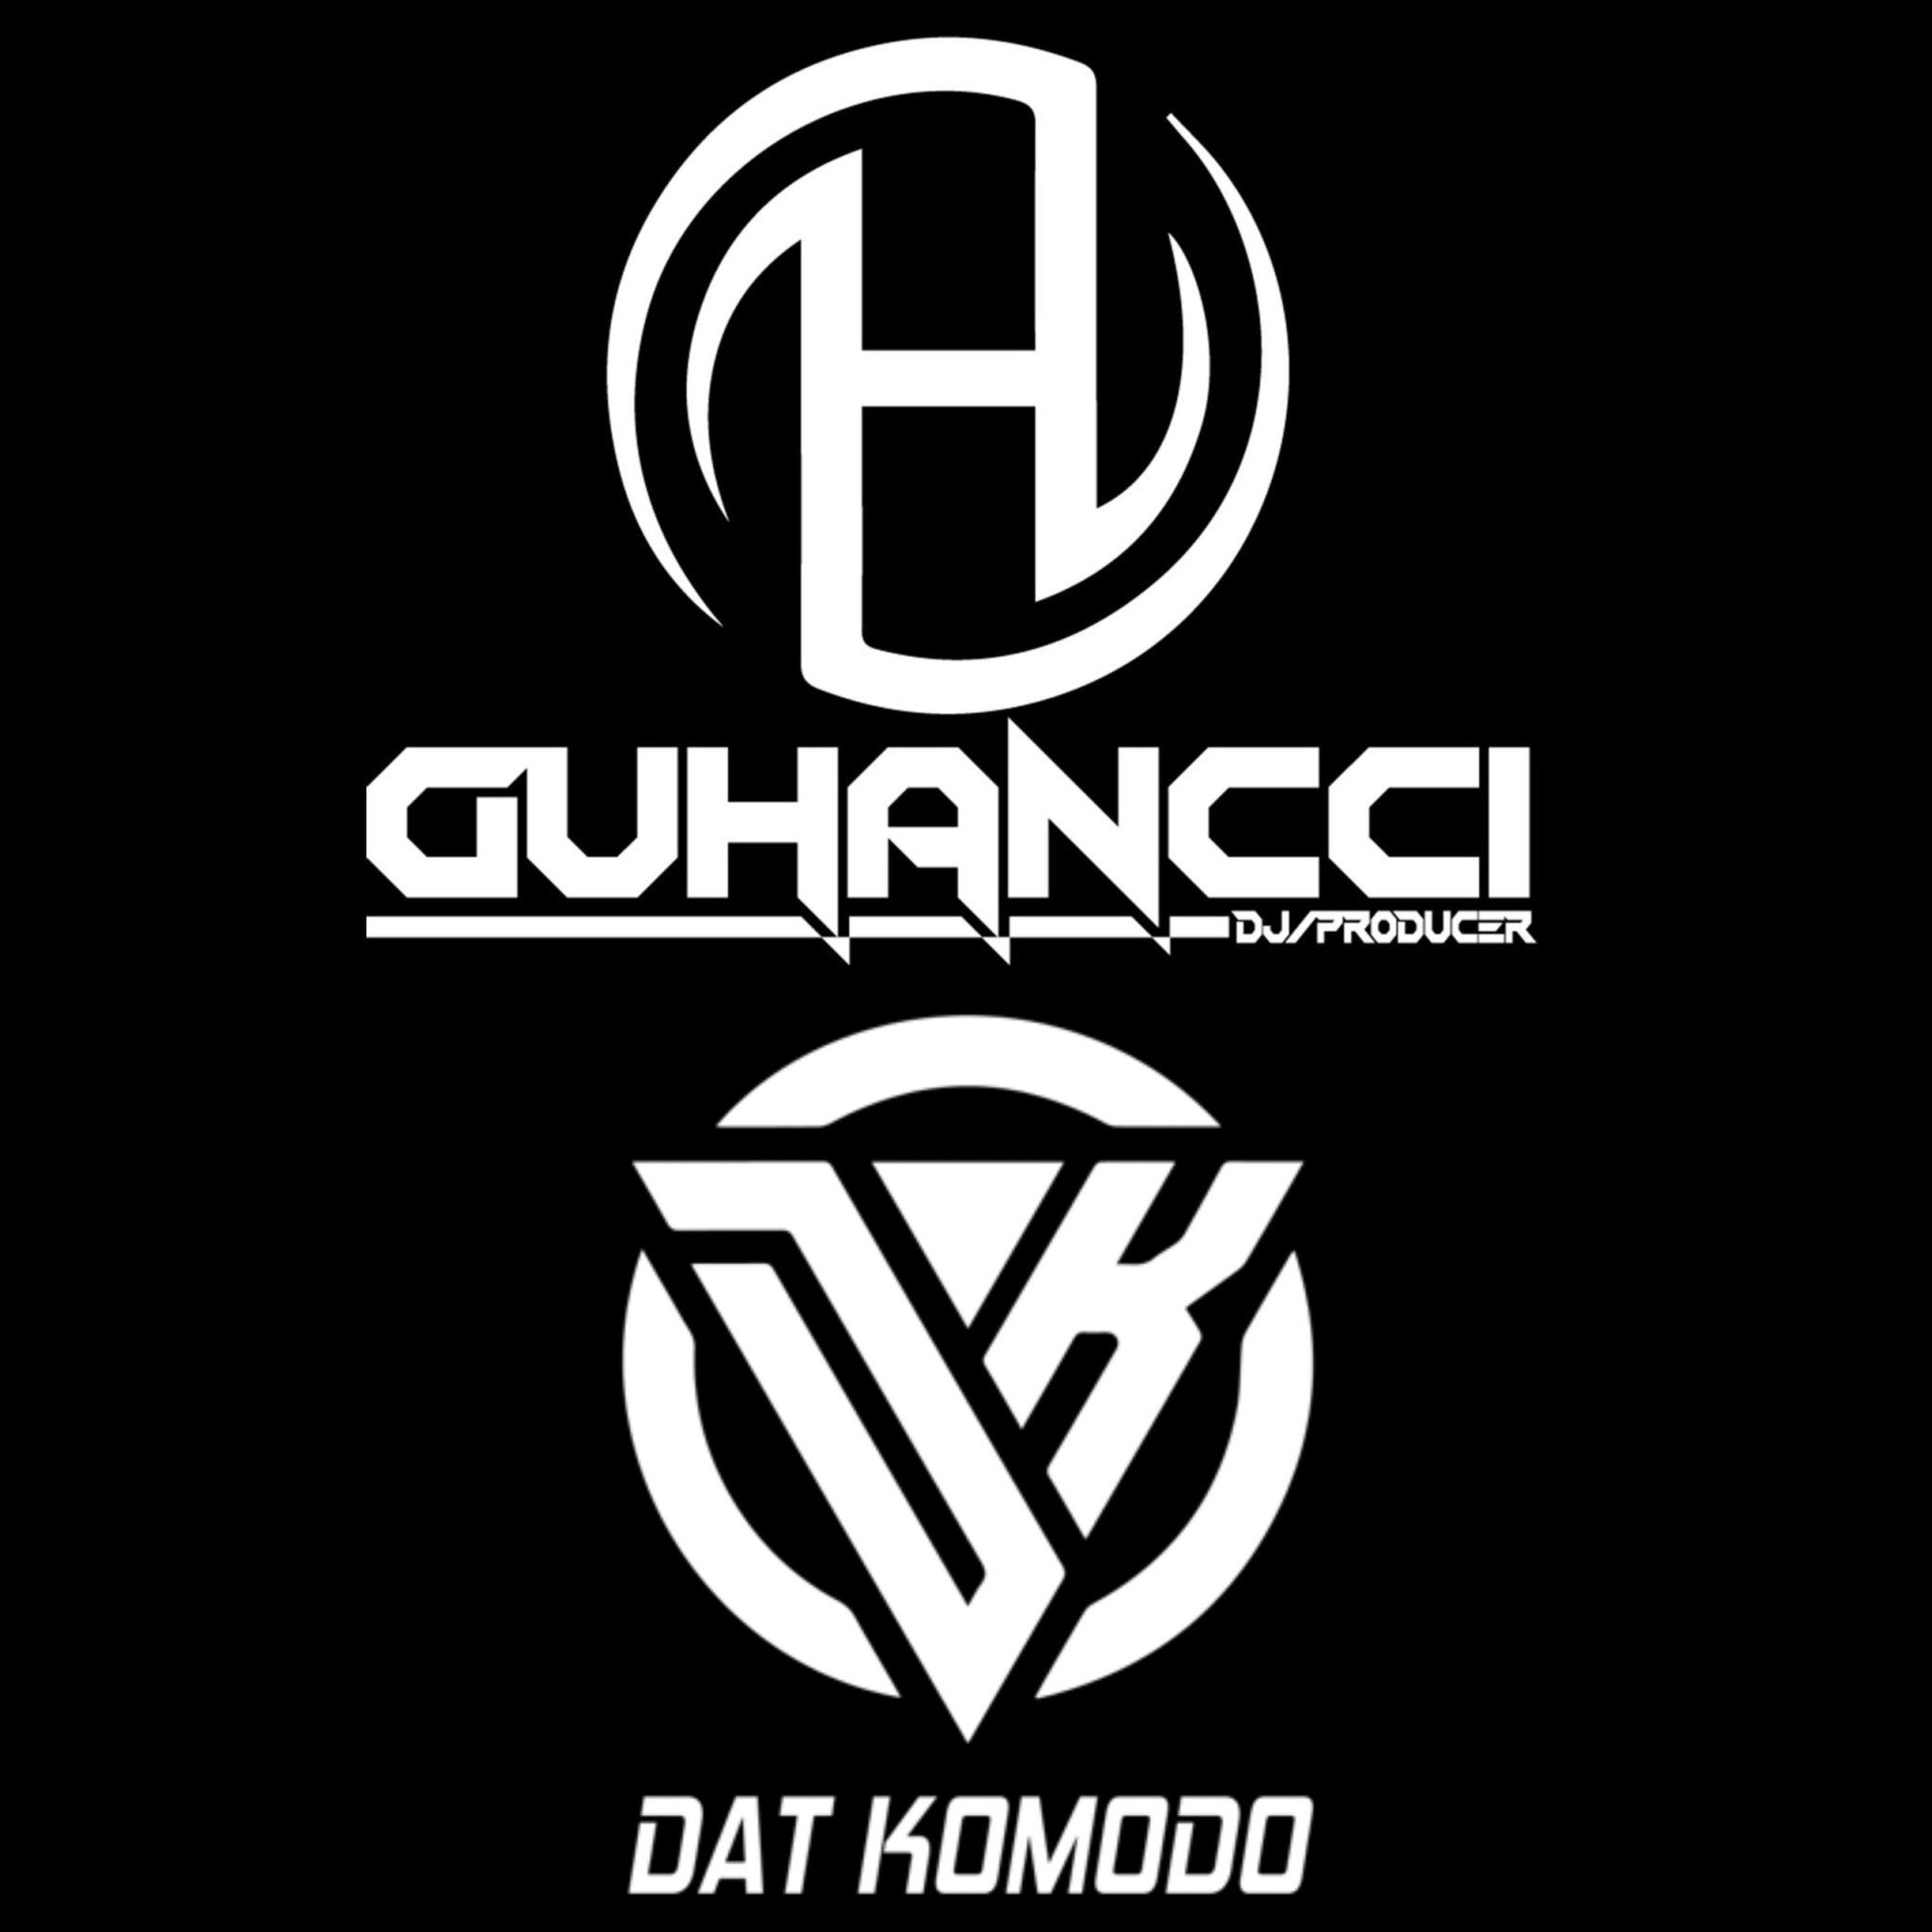 Télécharger Express Music - DatKomodo ft guHancci (guHancci Team)